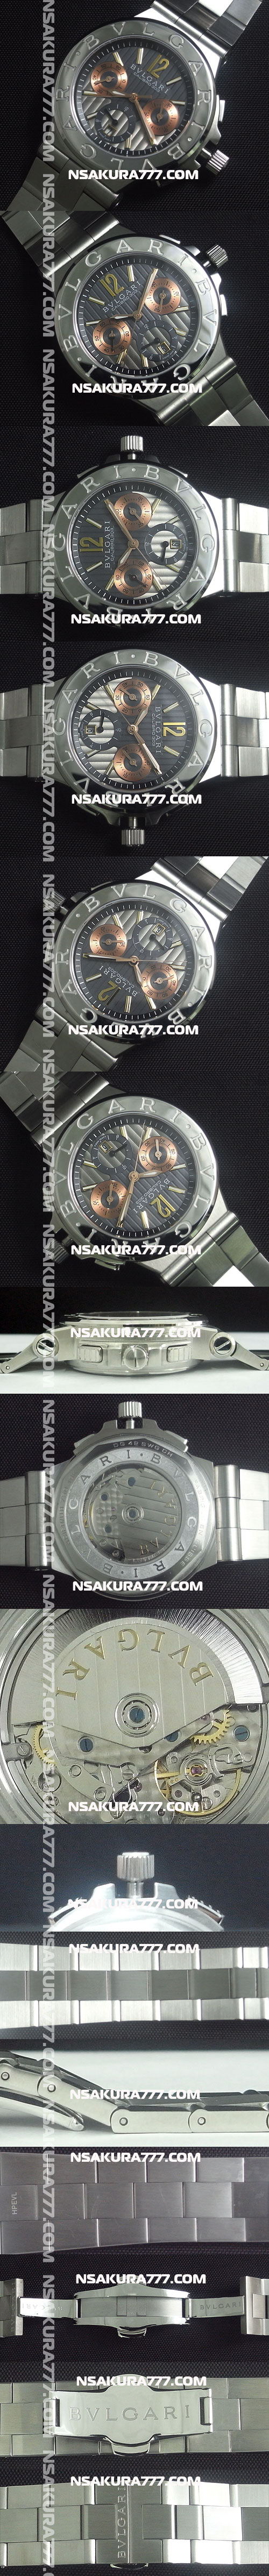 レプリカ時計ブルガリ ブルガリ 42mm クロノグラフ Asian 7750搭載 - ウインドウを閉じる